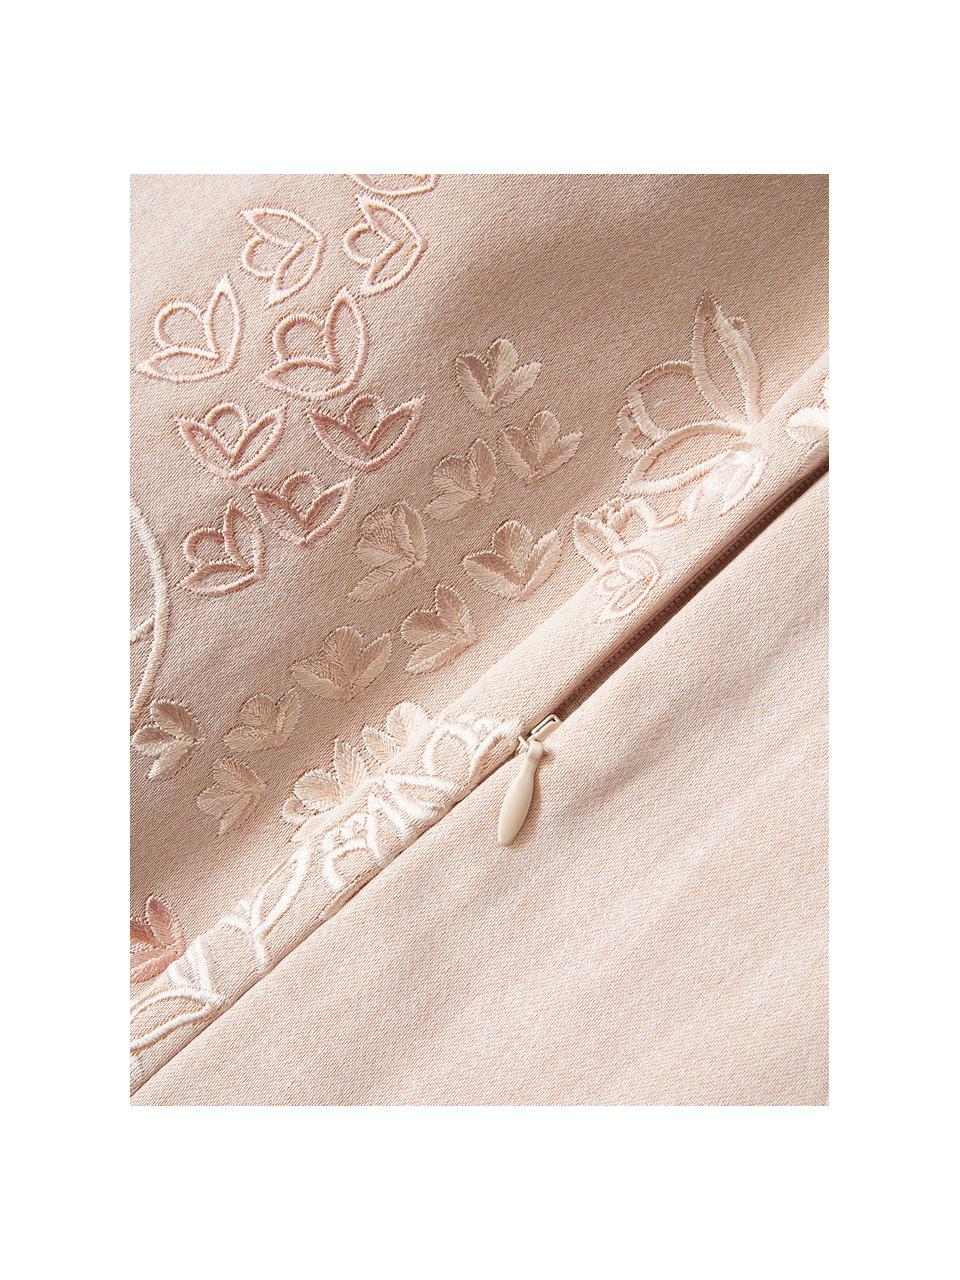 Baumwollsatin-Kissenhülle Cynthia mit Blumen-Muster, 100% Baumwollsatin, Hellrosa, B 40 x L 40 cm